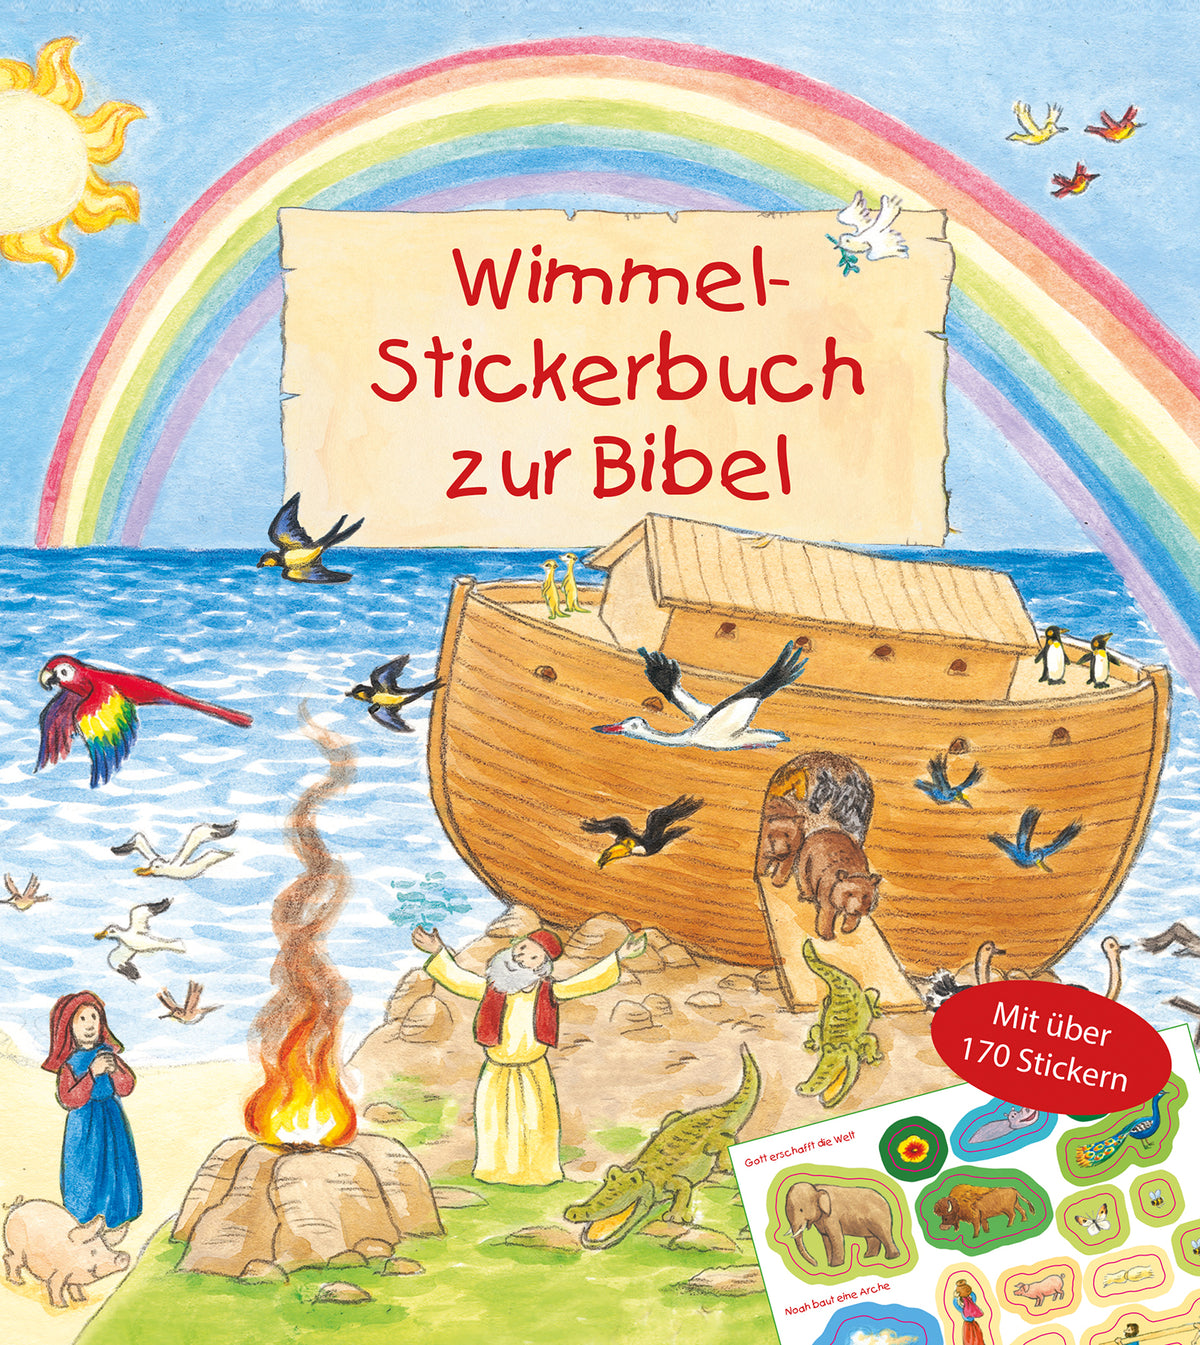 Wimmel - Stickerbuch zur Bibel